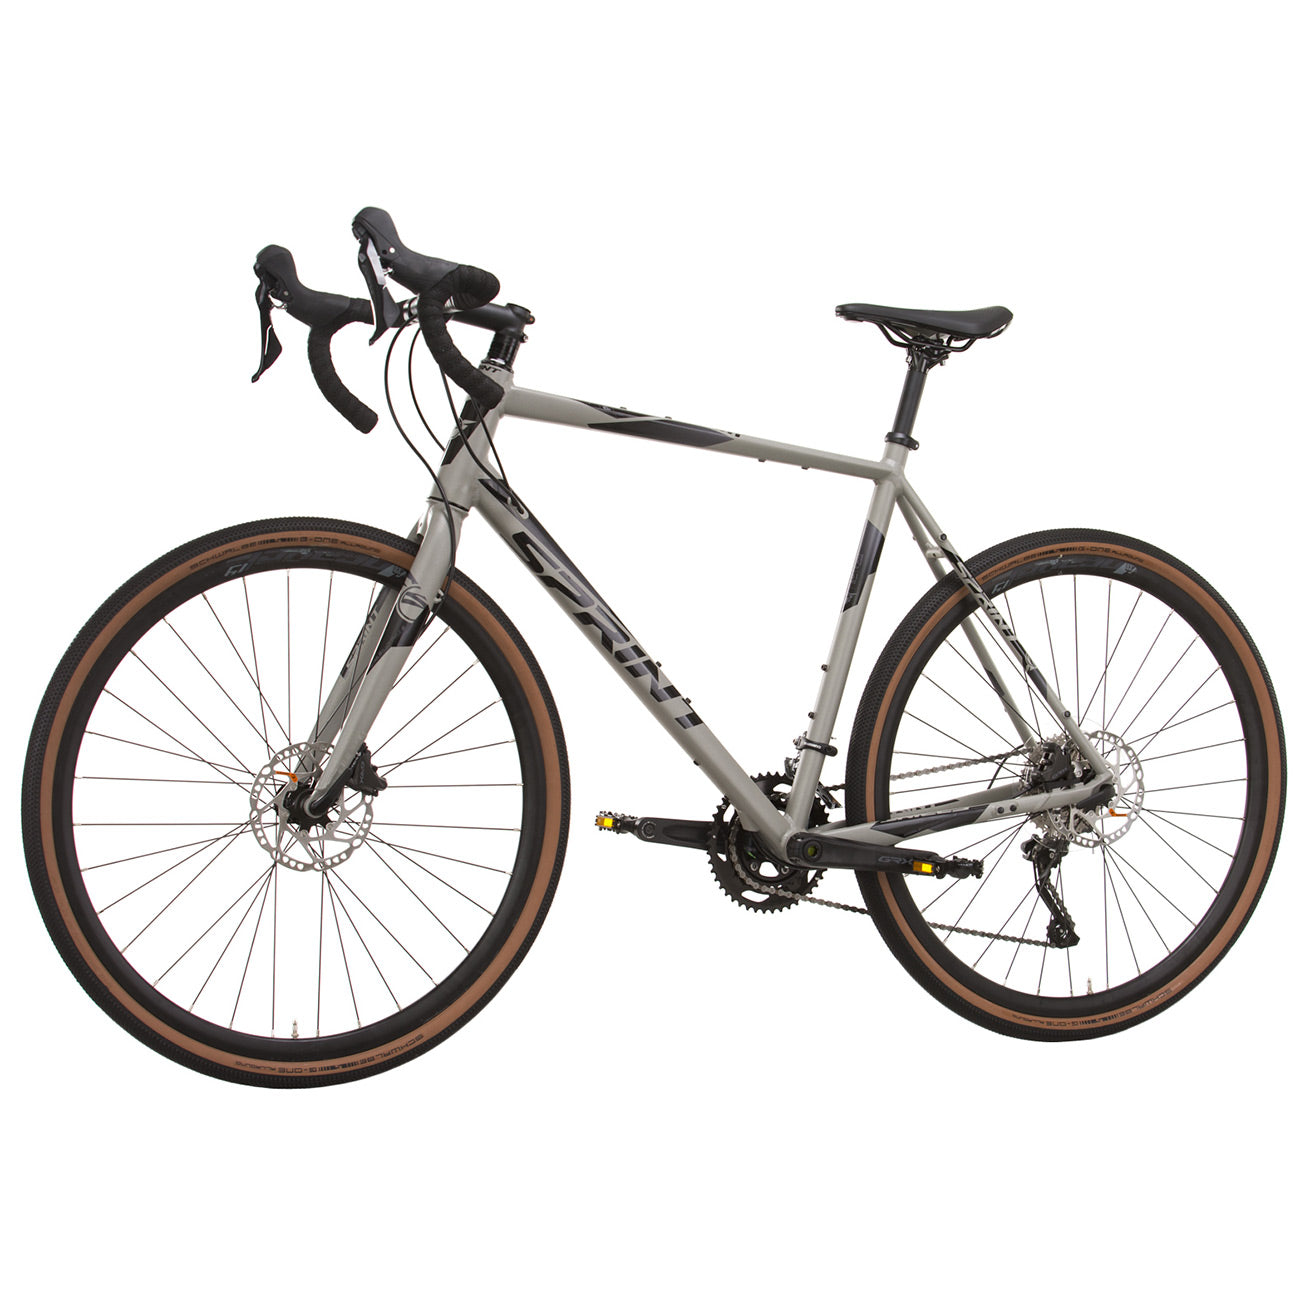 herren-gravel-bike-fahrrad-whister-shimano-grx-400-2-9-gang-52-56-cm-schwarz-grau-5